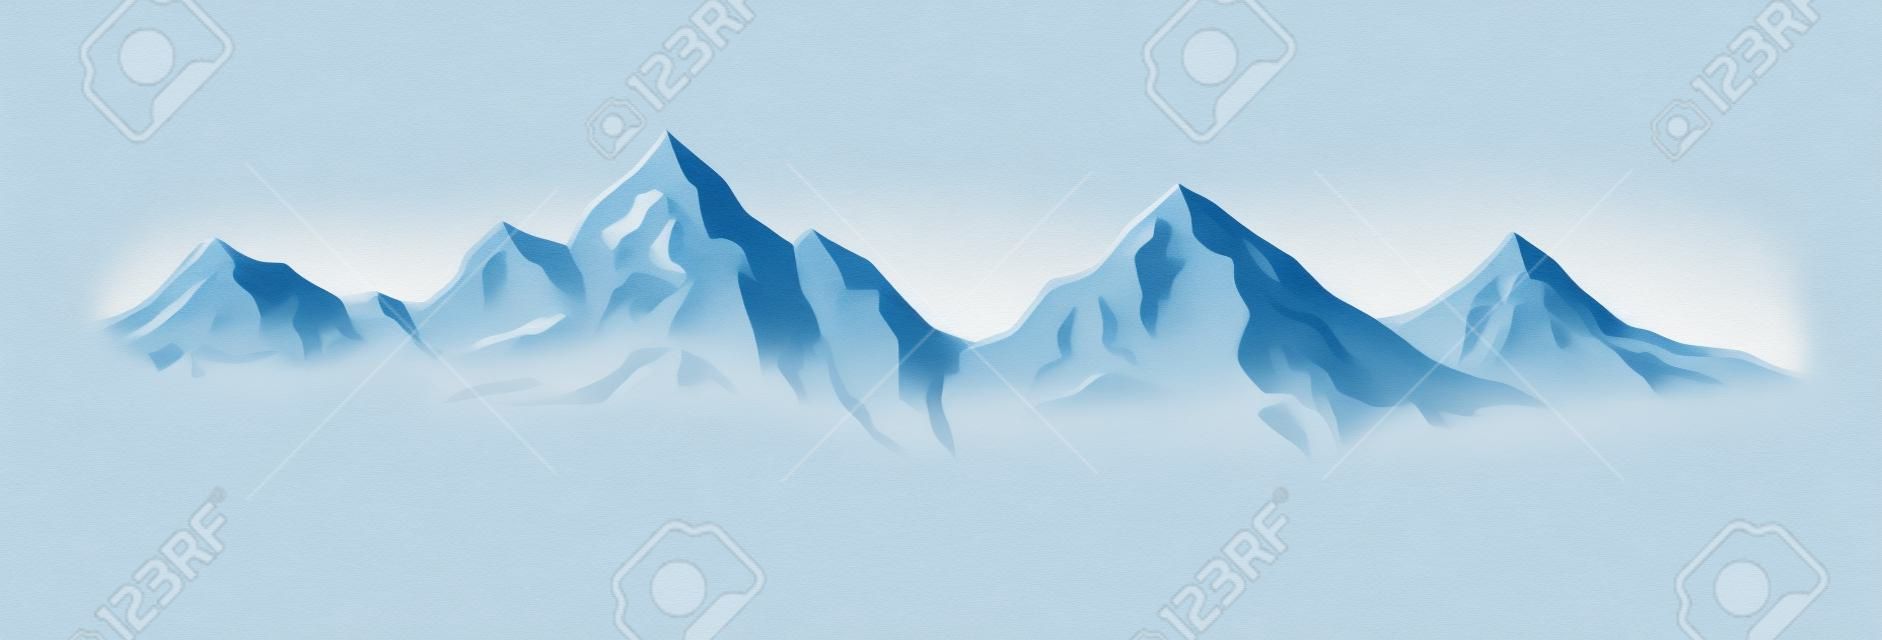 Ilustracja Zima w górach